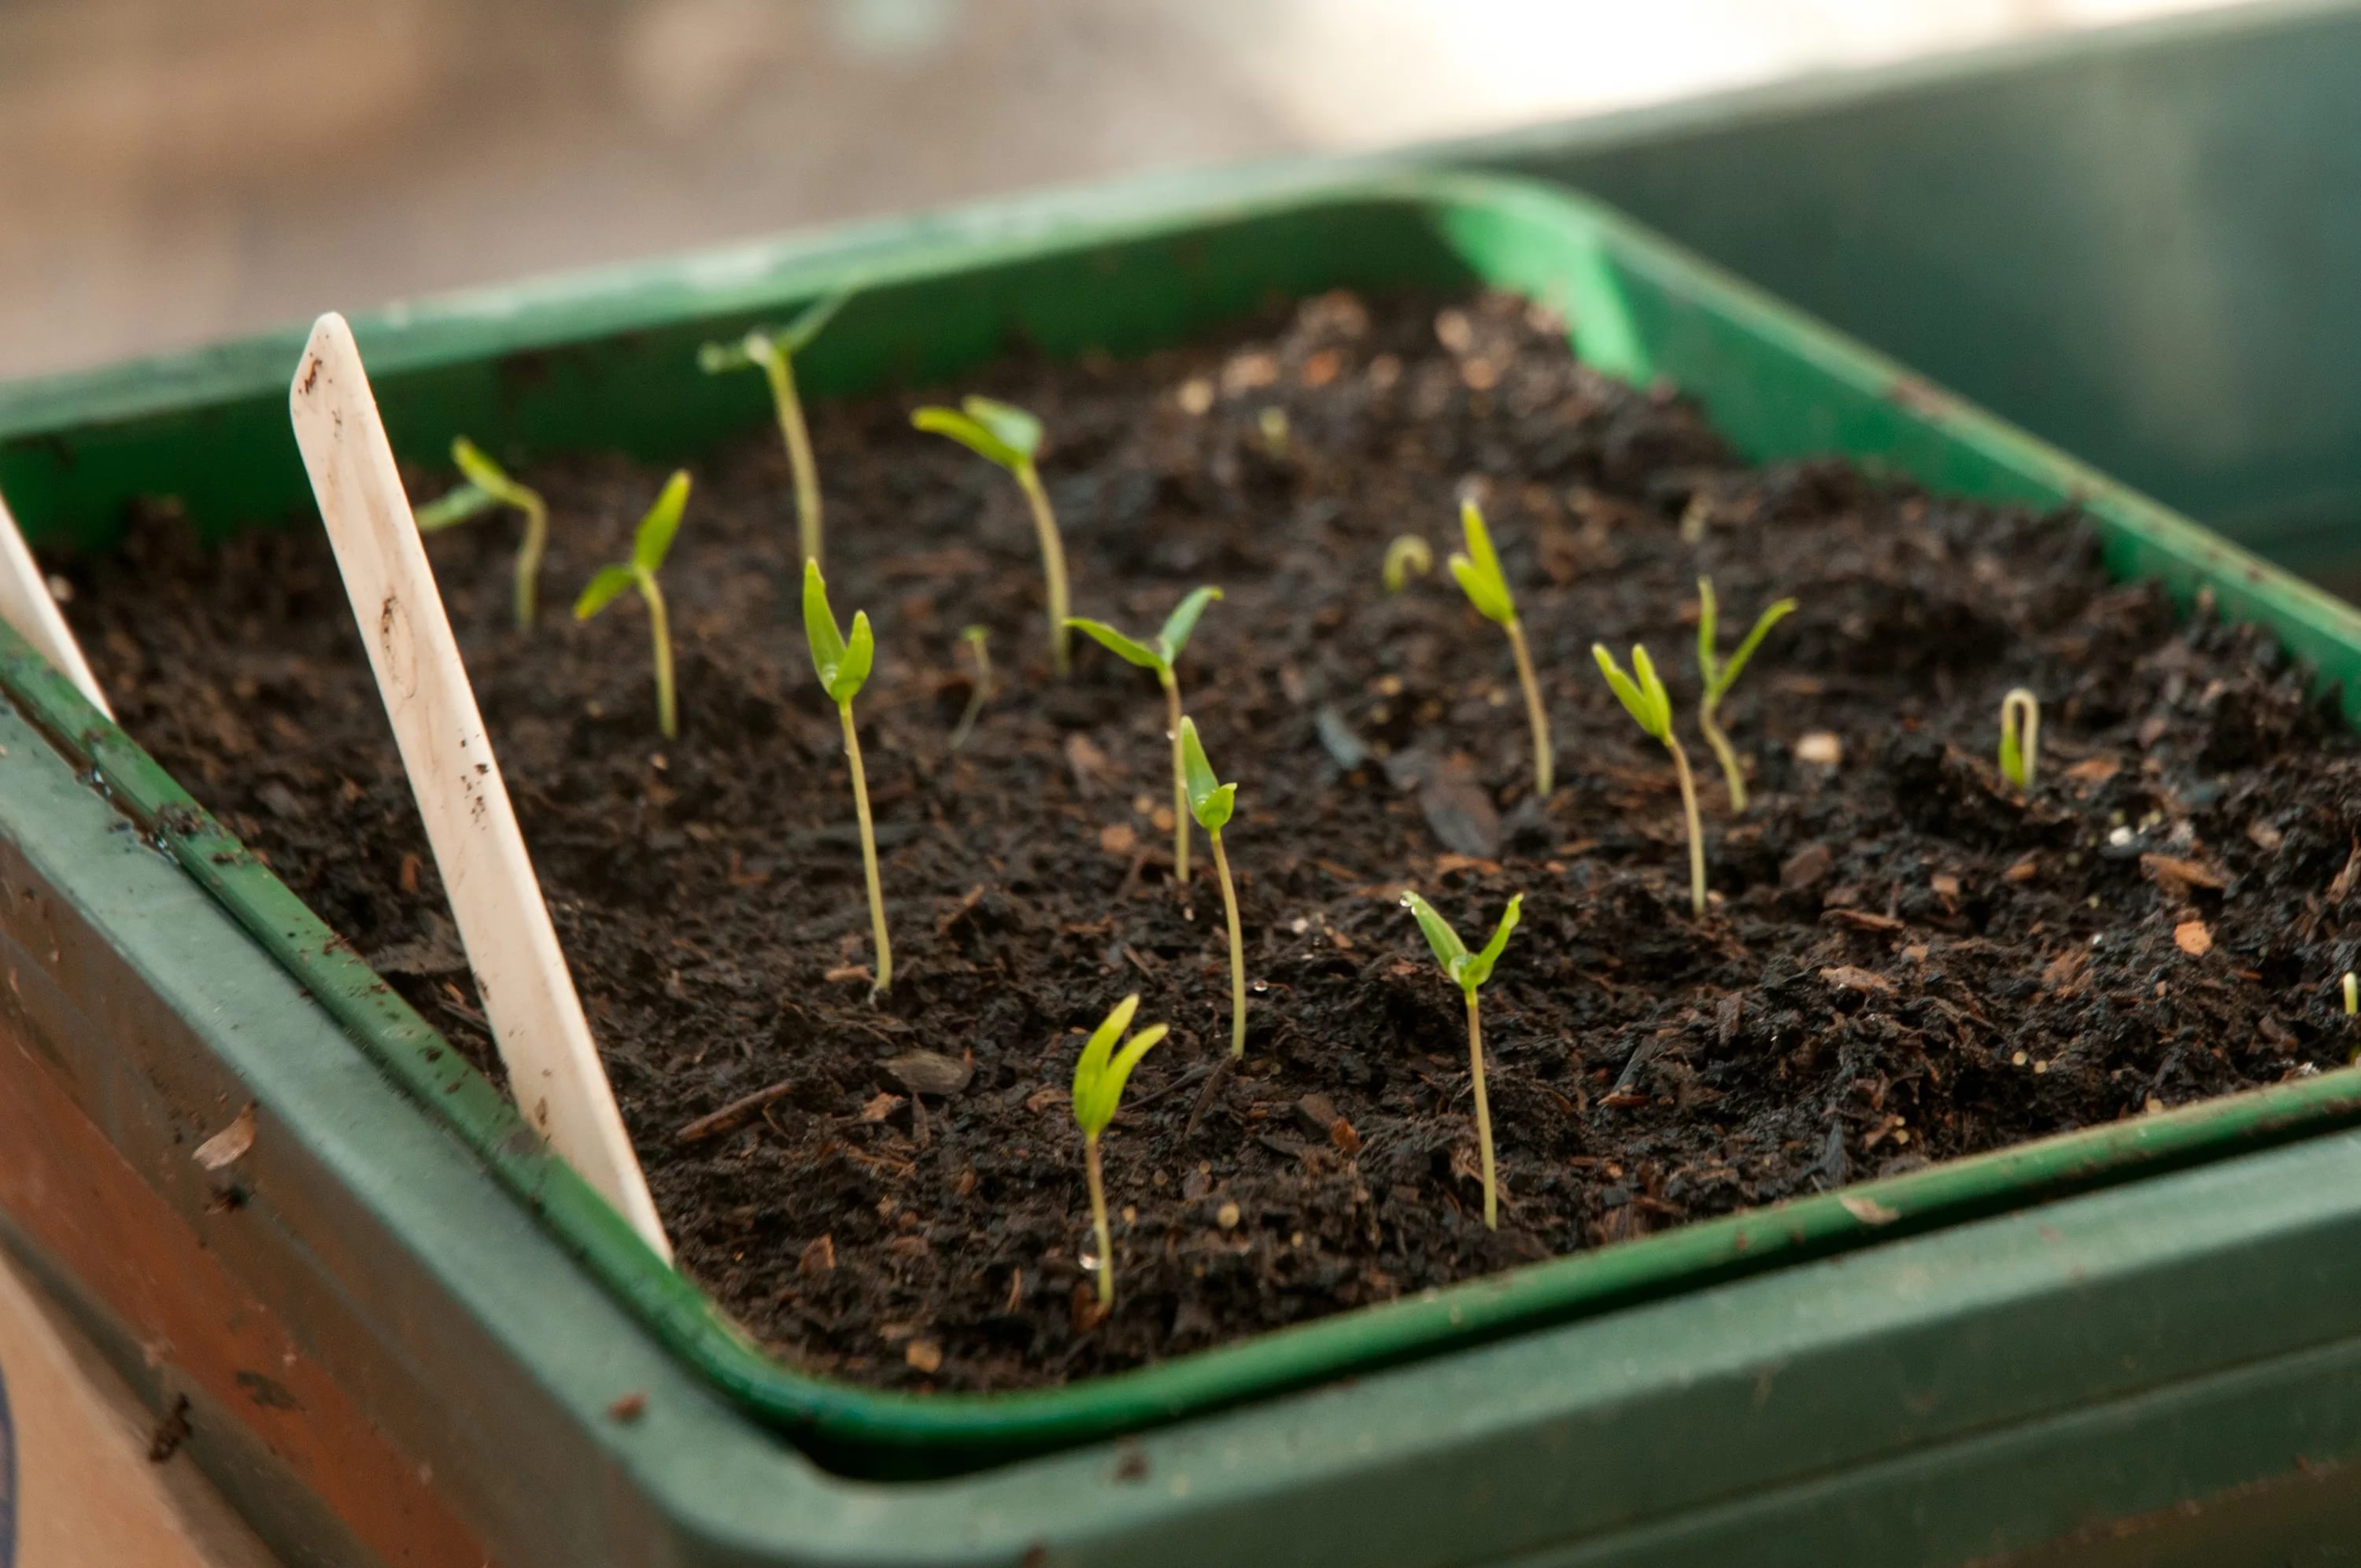 Как правильно сажать перец на рассаду и вырастить качественную рассаду